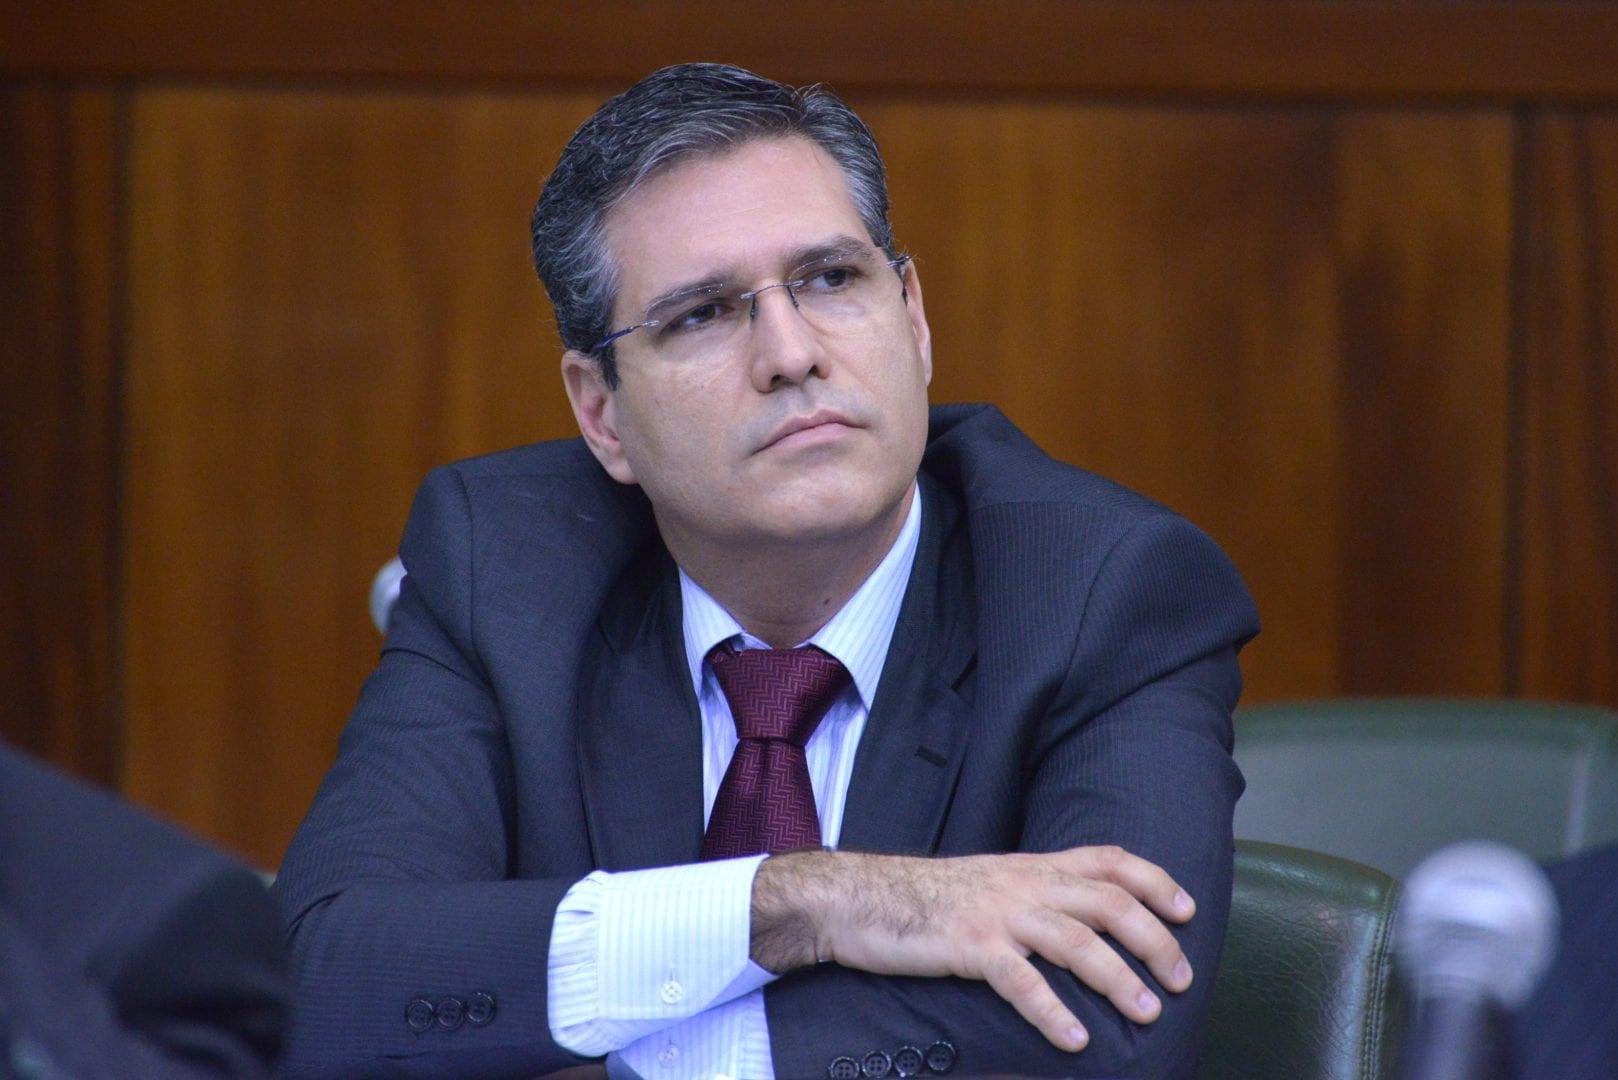 Fala, deputado: "Sou a favor da reforma trabalhista e de todas as outras", diz Francisco Júnior